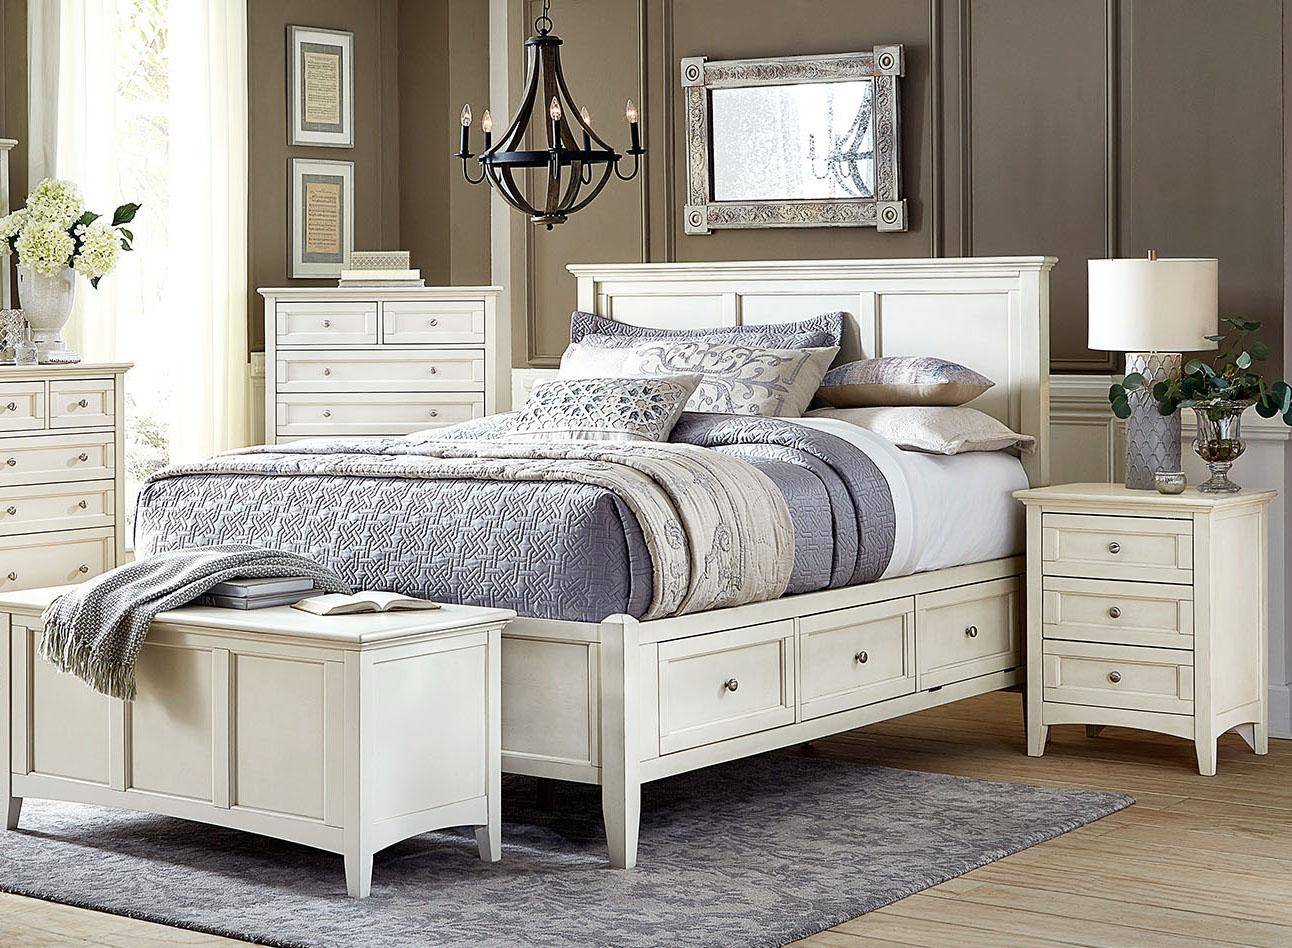 queen bedroom furniture with storage